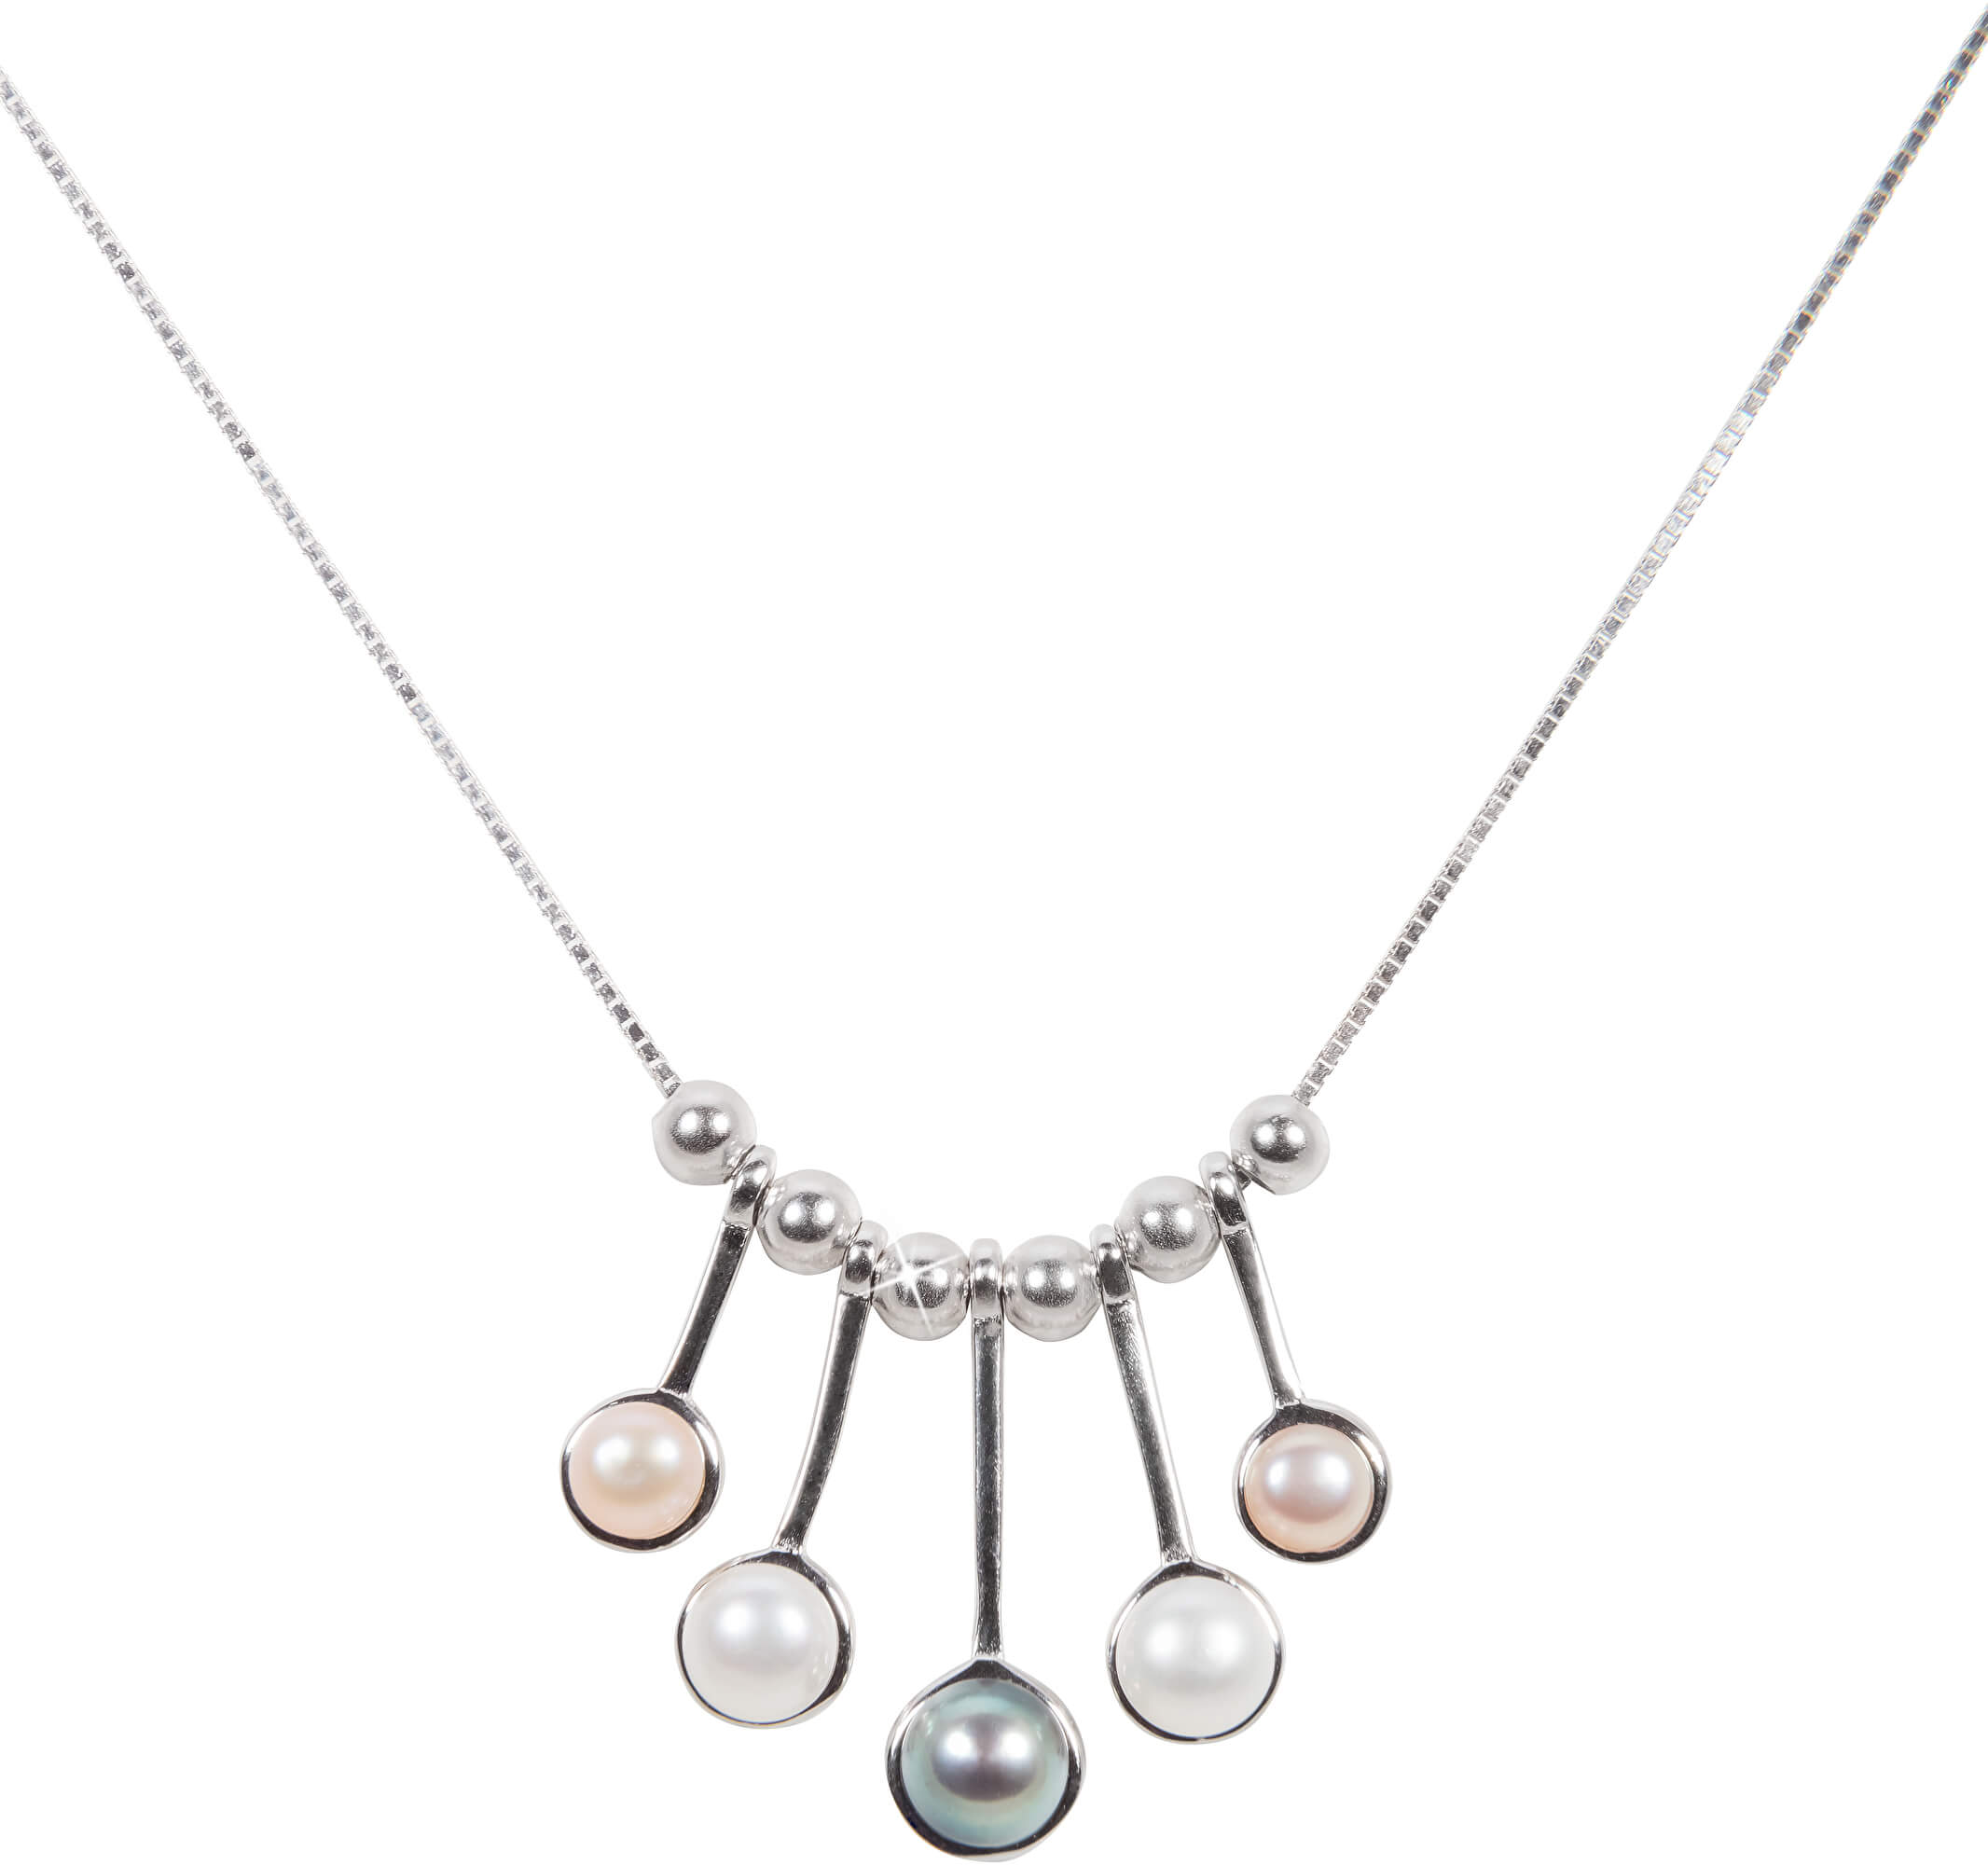 JwL Luxury Pearls Něžný stříbrný náhrdelník s pravými perličkami JL0459 (řetízek, přívěsek)